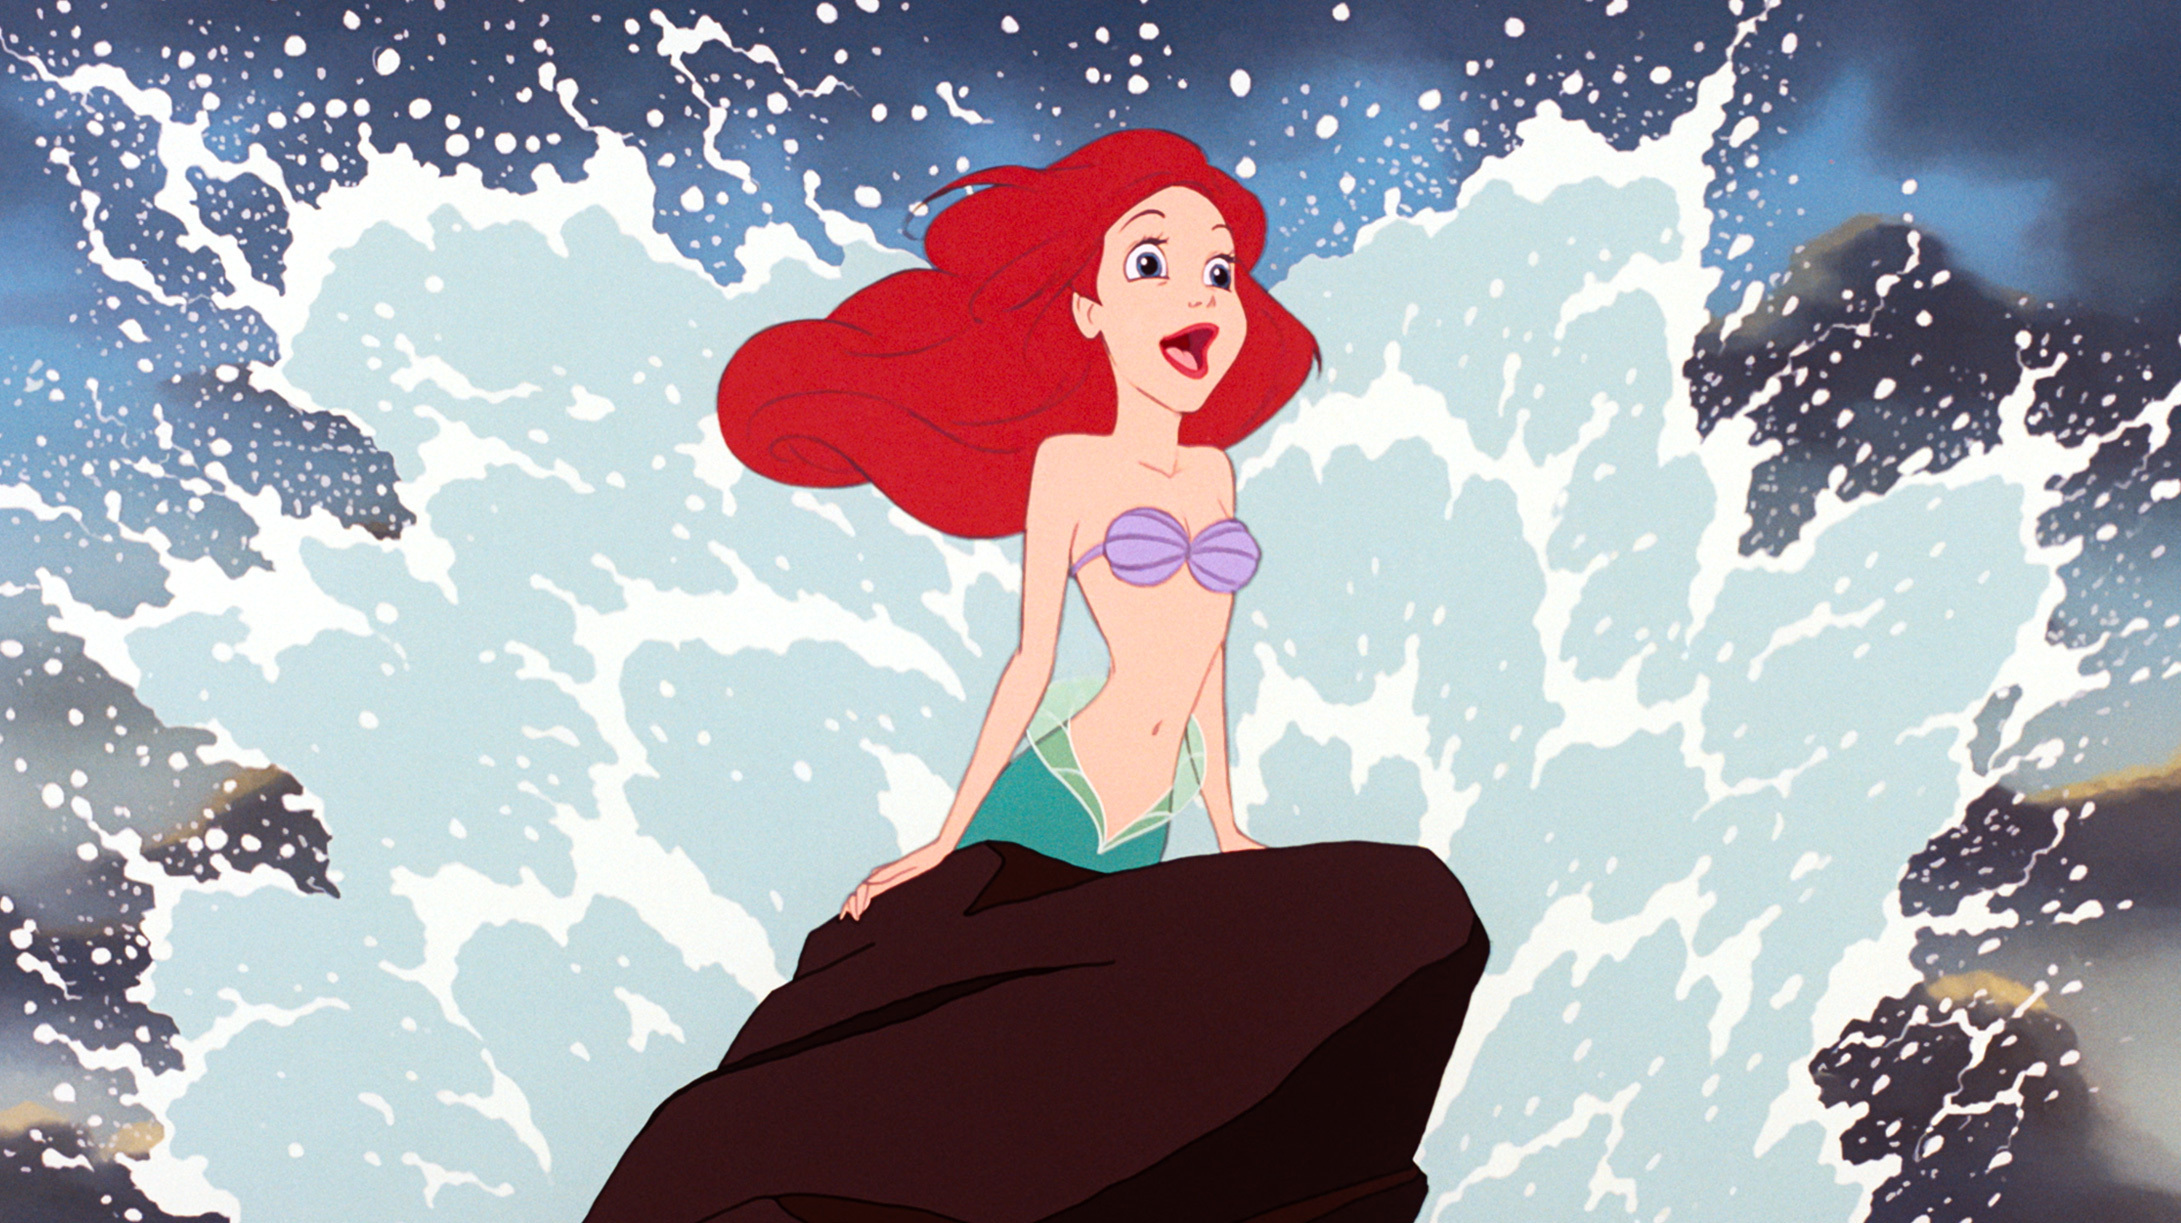 The Little Mermaid Princess Ariel Rock • DisneyExaminer